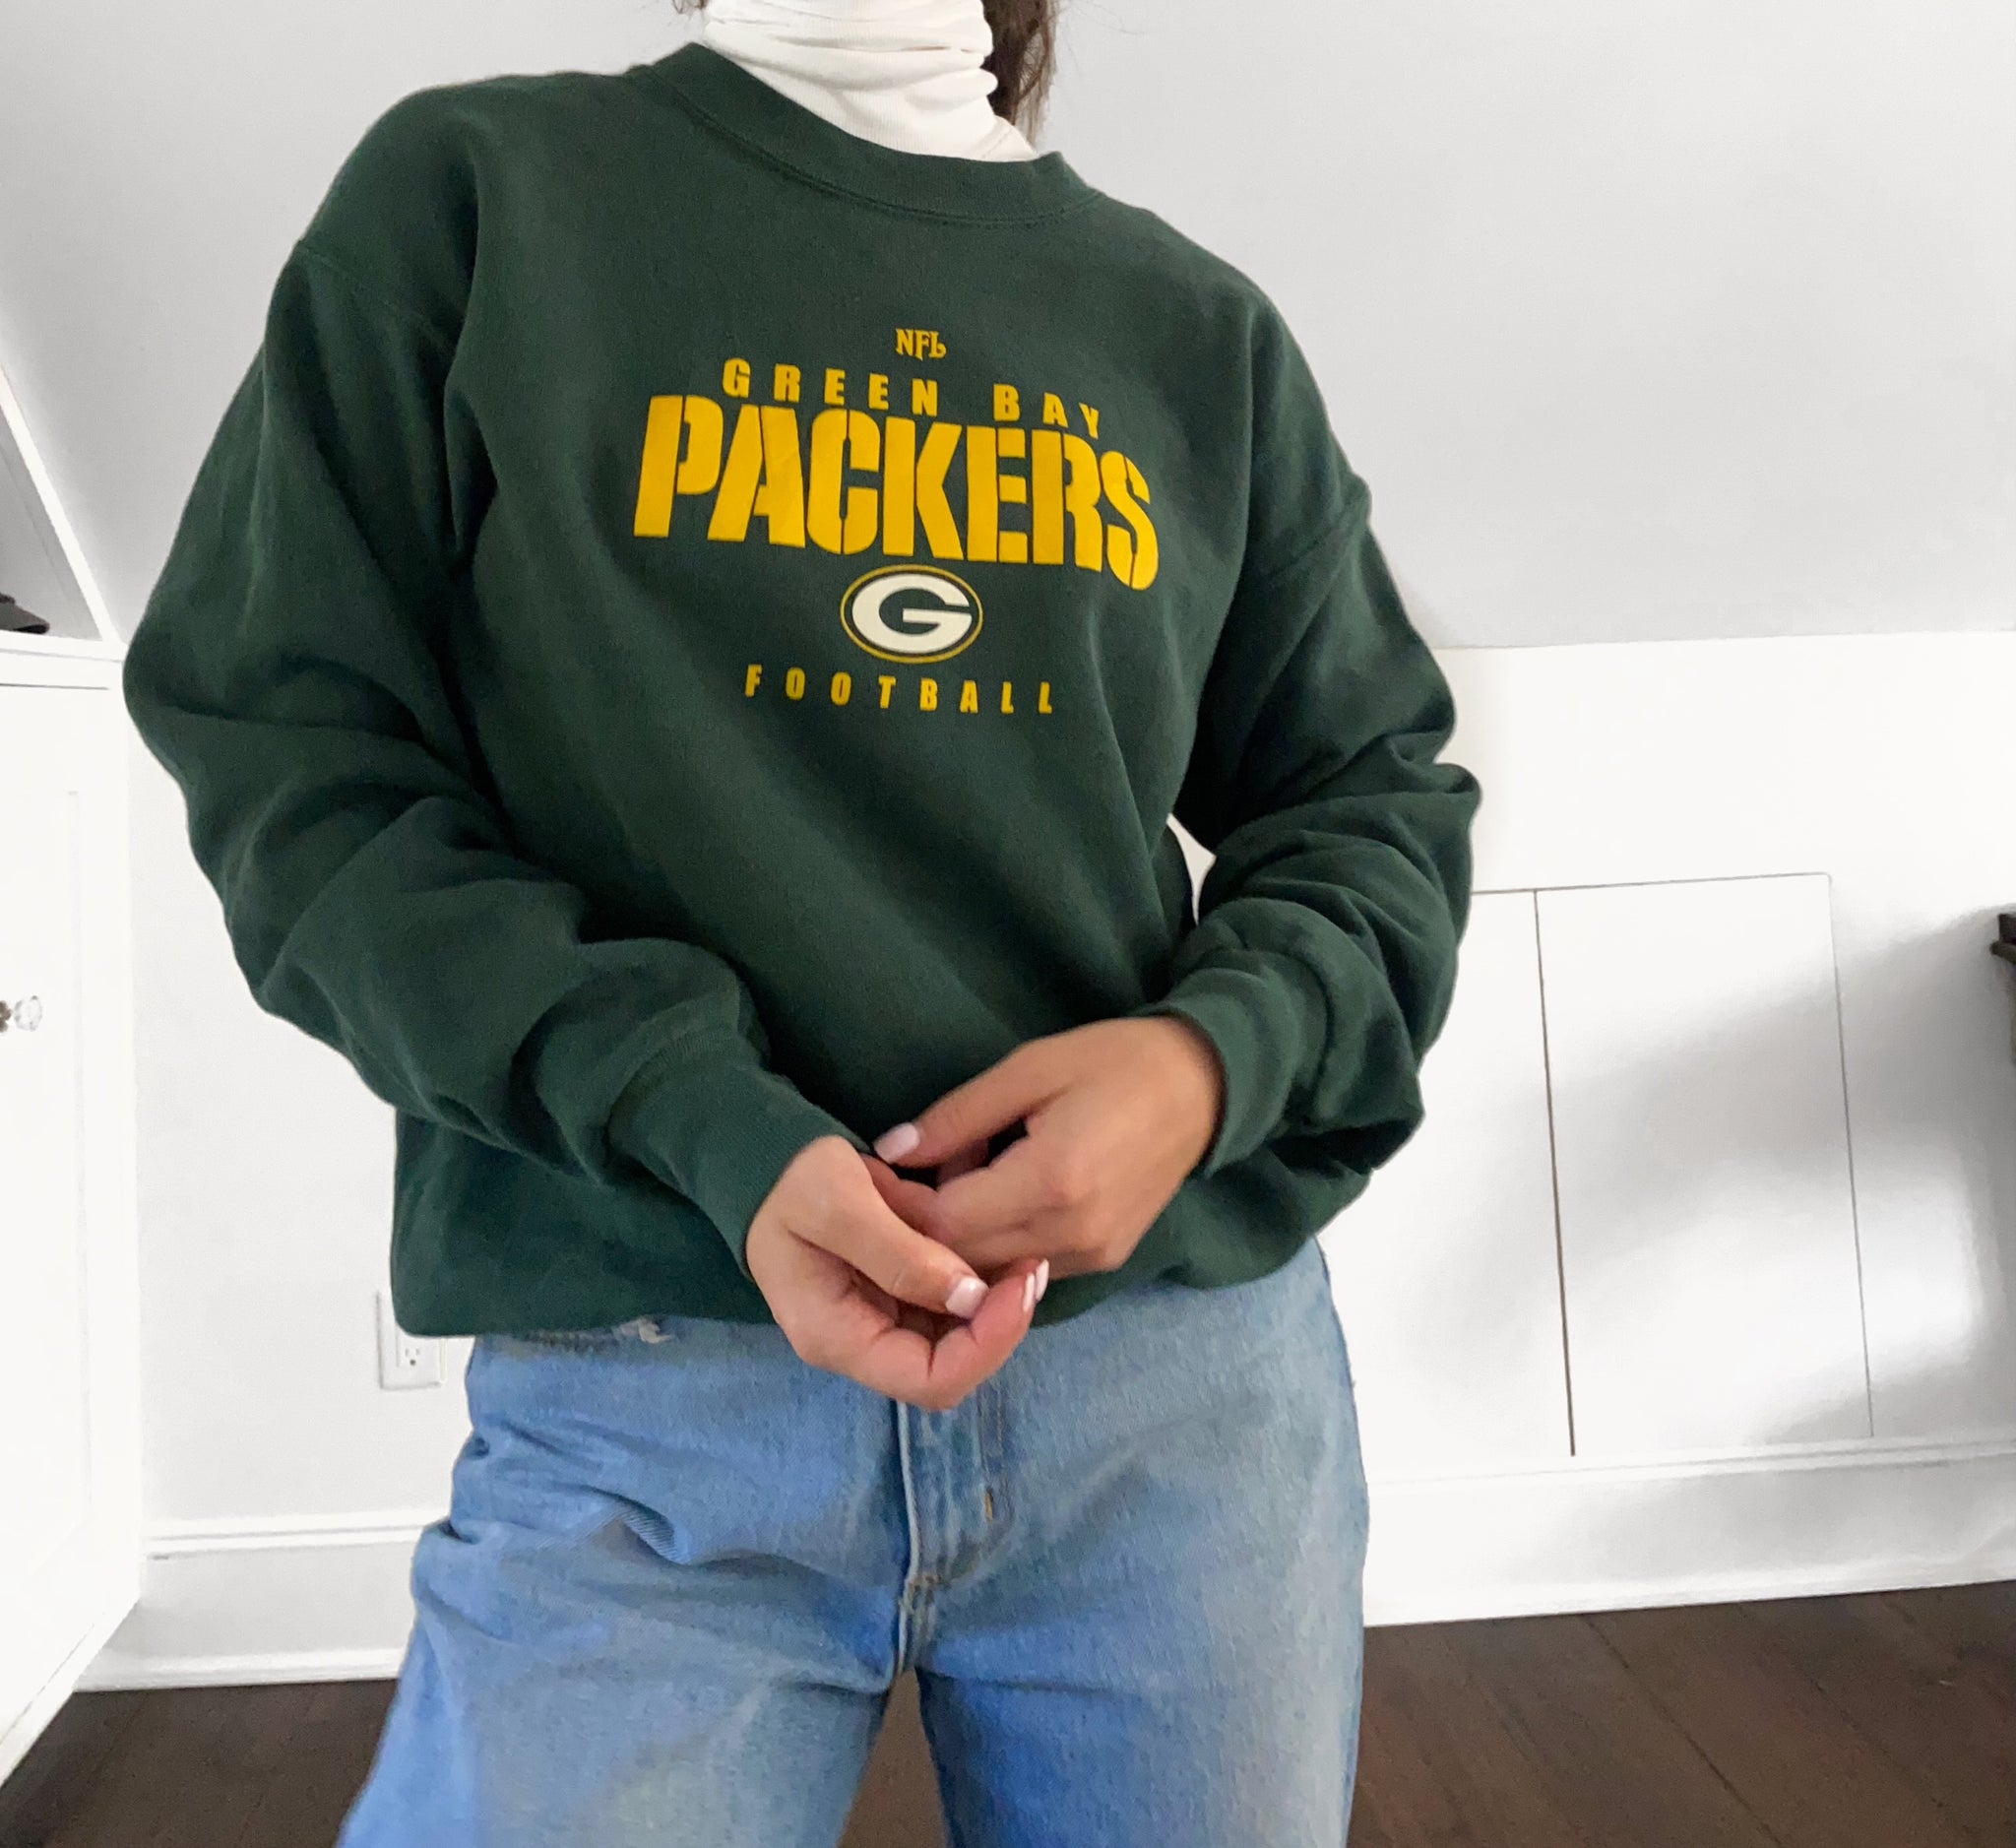 green bay packers crew neck sweatshirt